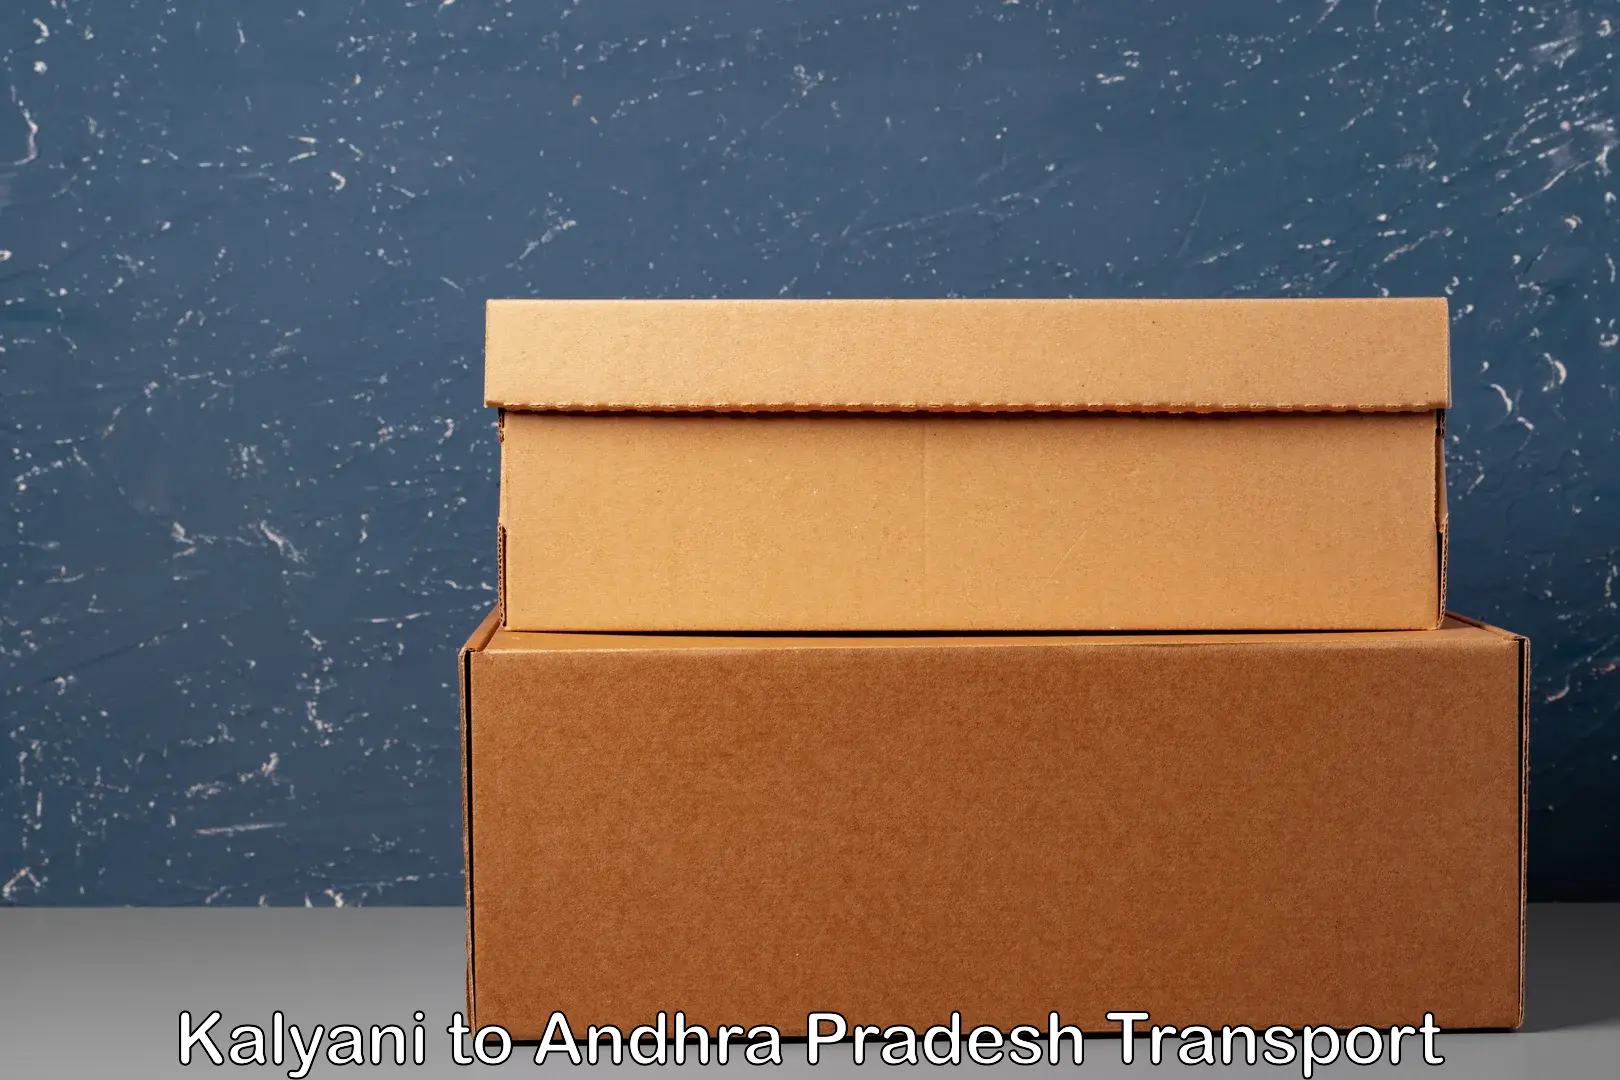 Pick up transport service Kalyani to Andhra Pradesh